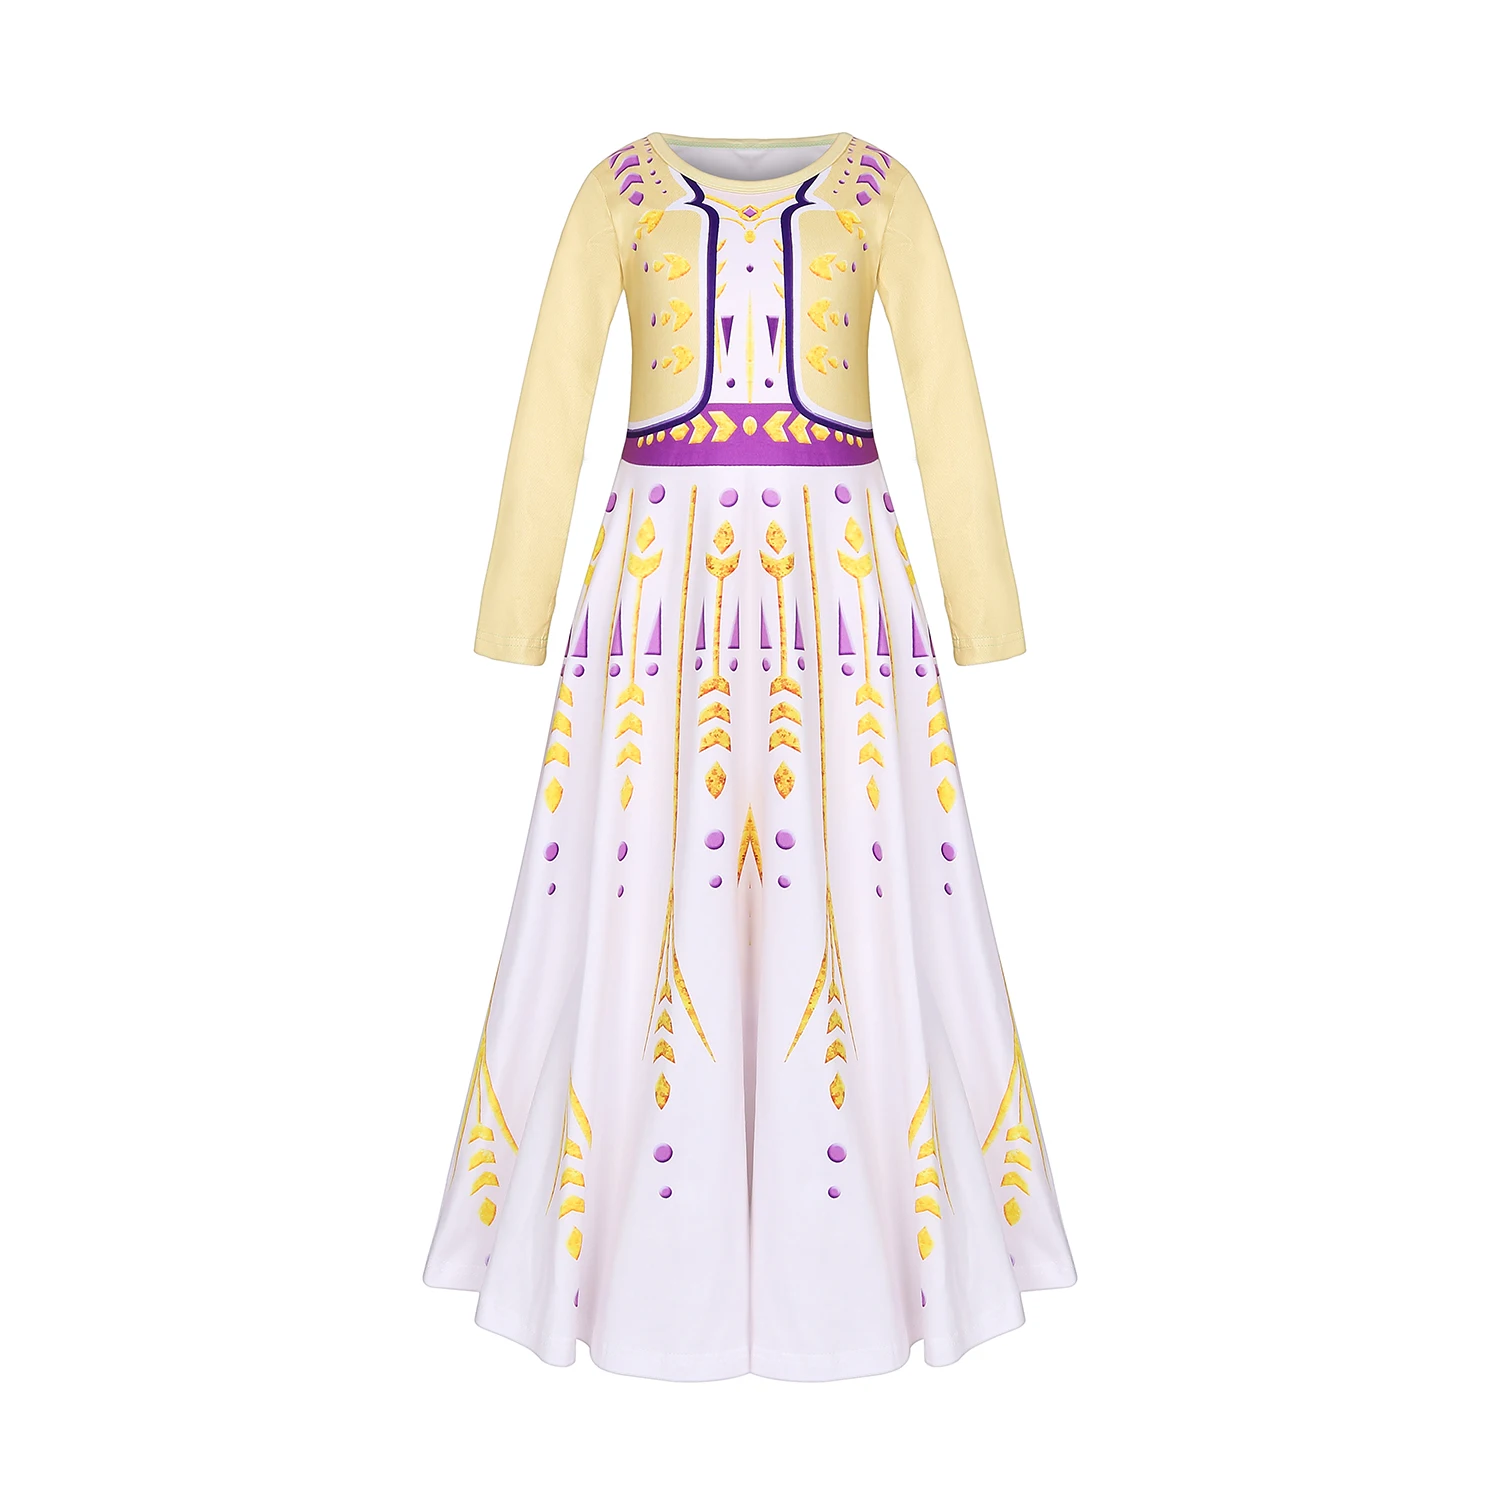 Платье для маленьких девочек с изображением Анны и Эльзы 2 костюм принцессы Косплэй одежда для детей ясельного возраста вечерние ролевых игр детская одежда красивые платья для девочек